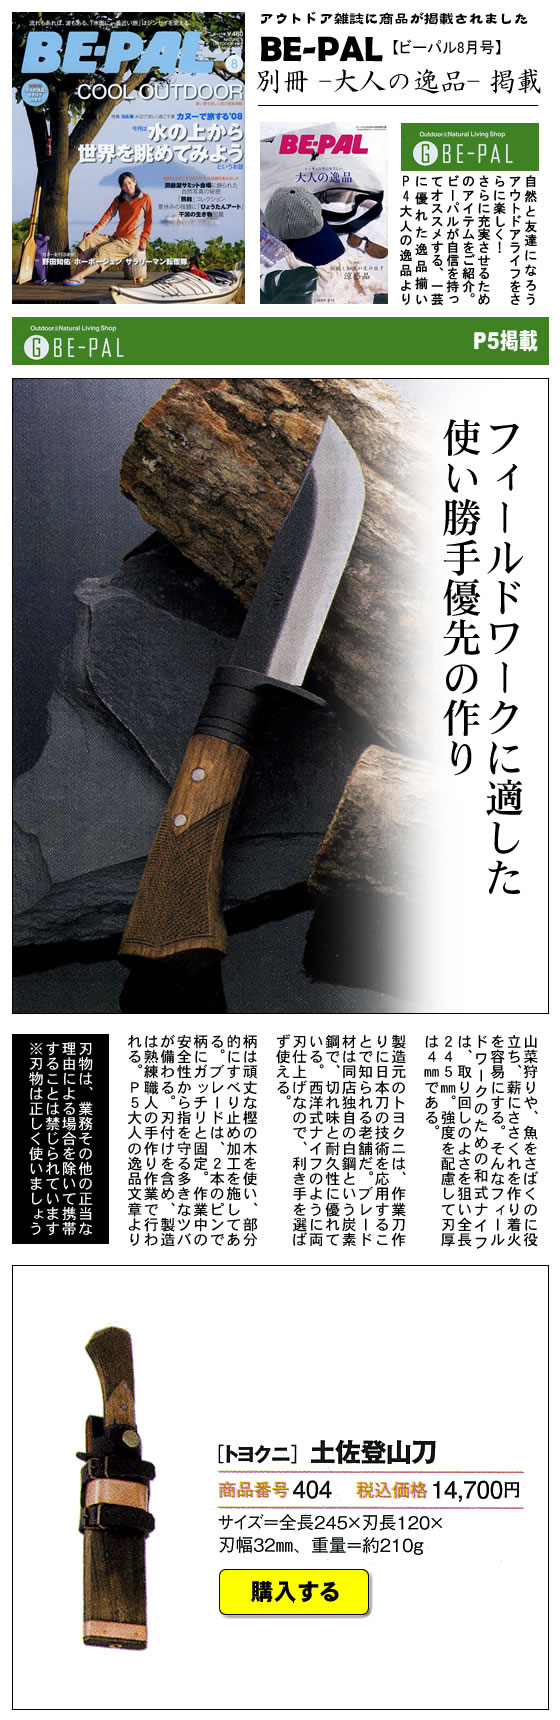 小学館「BE-PAL 2007年 8月号別冊　大人の逸品」に『土佐登山刀』が掲載されました。